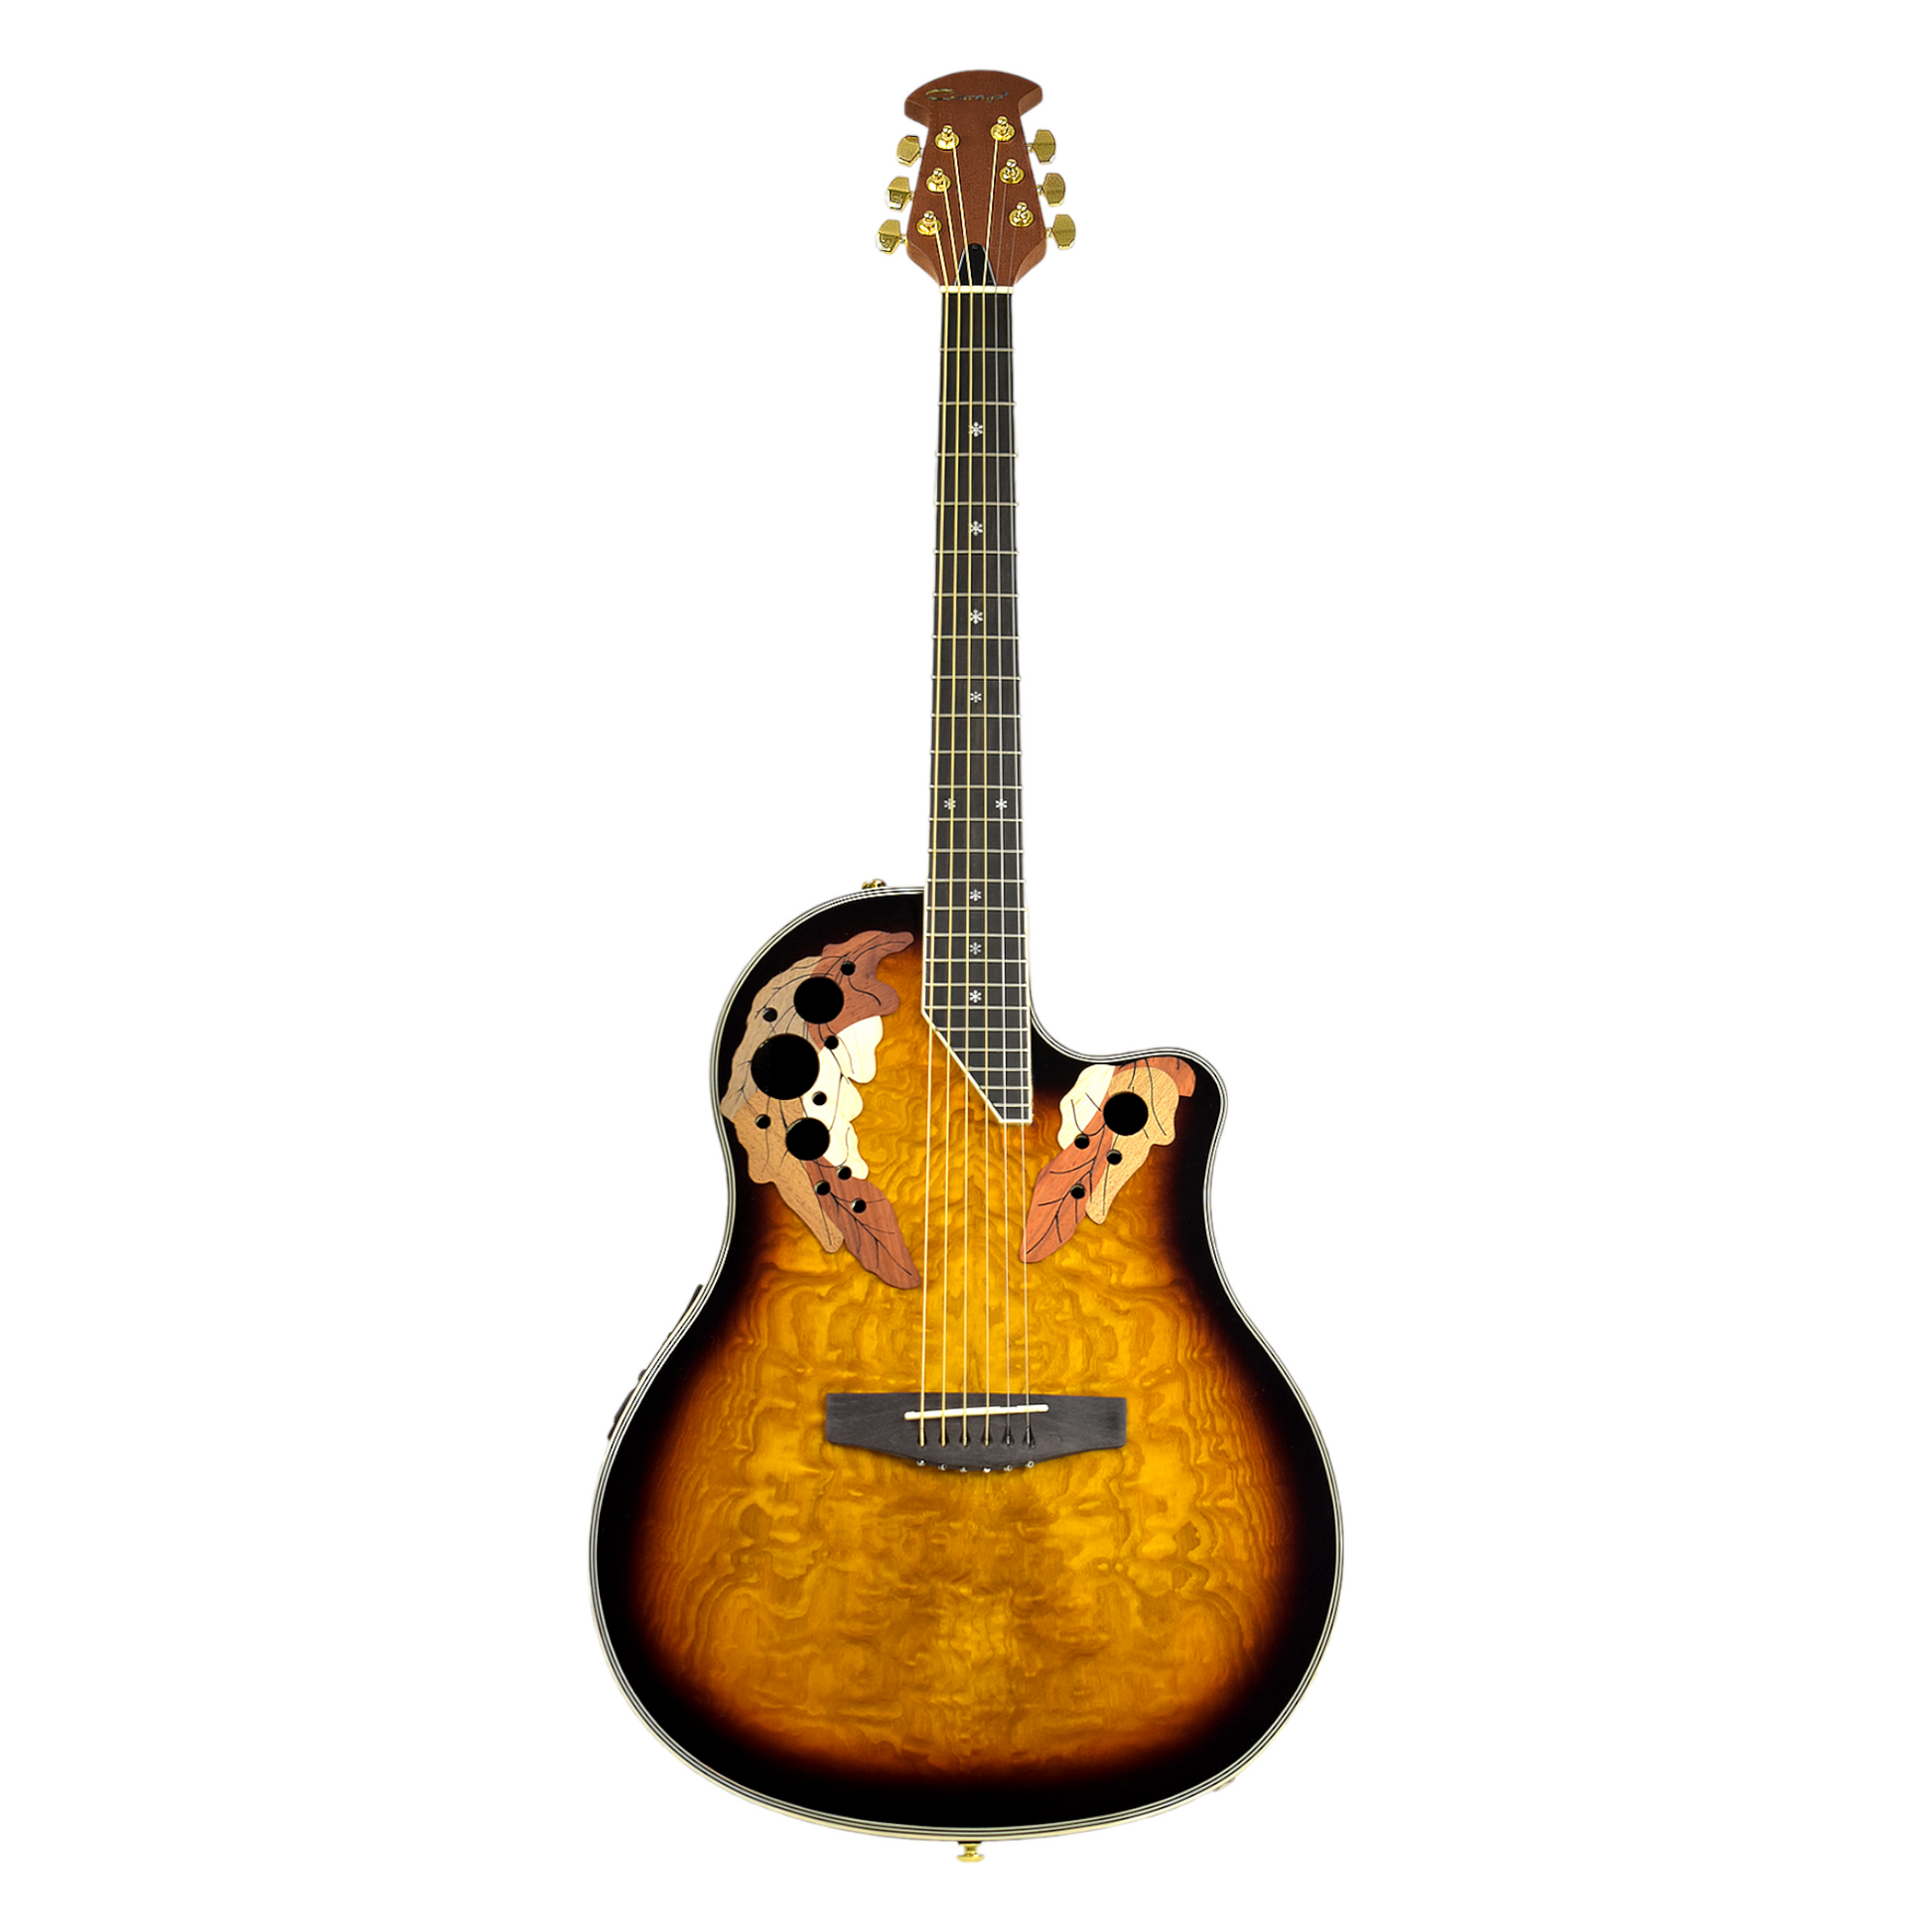 Caraya Roundback Built-In Pickups Fibre Glass Back Acoustic Guitar